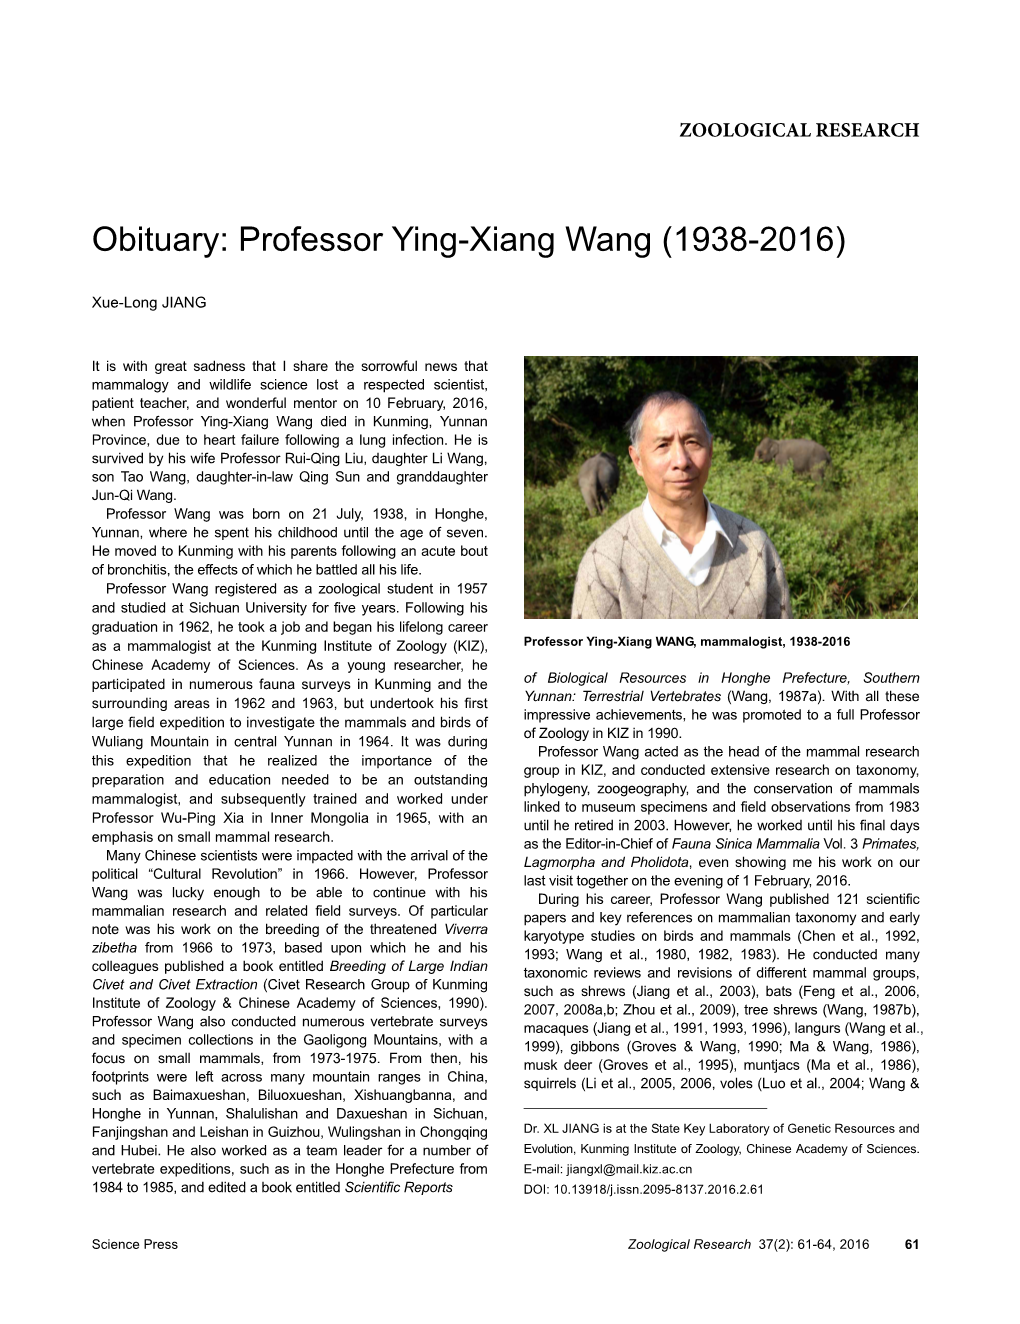 Obituary: Professor Ying-Xiang Wang (1938-2016)